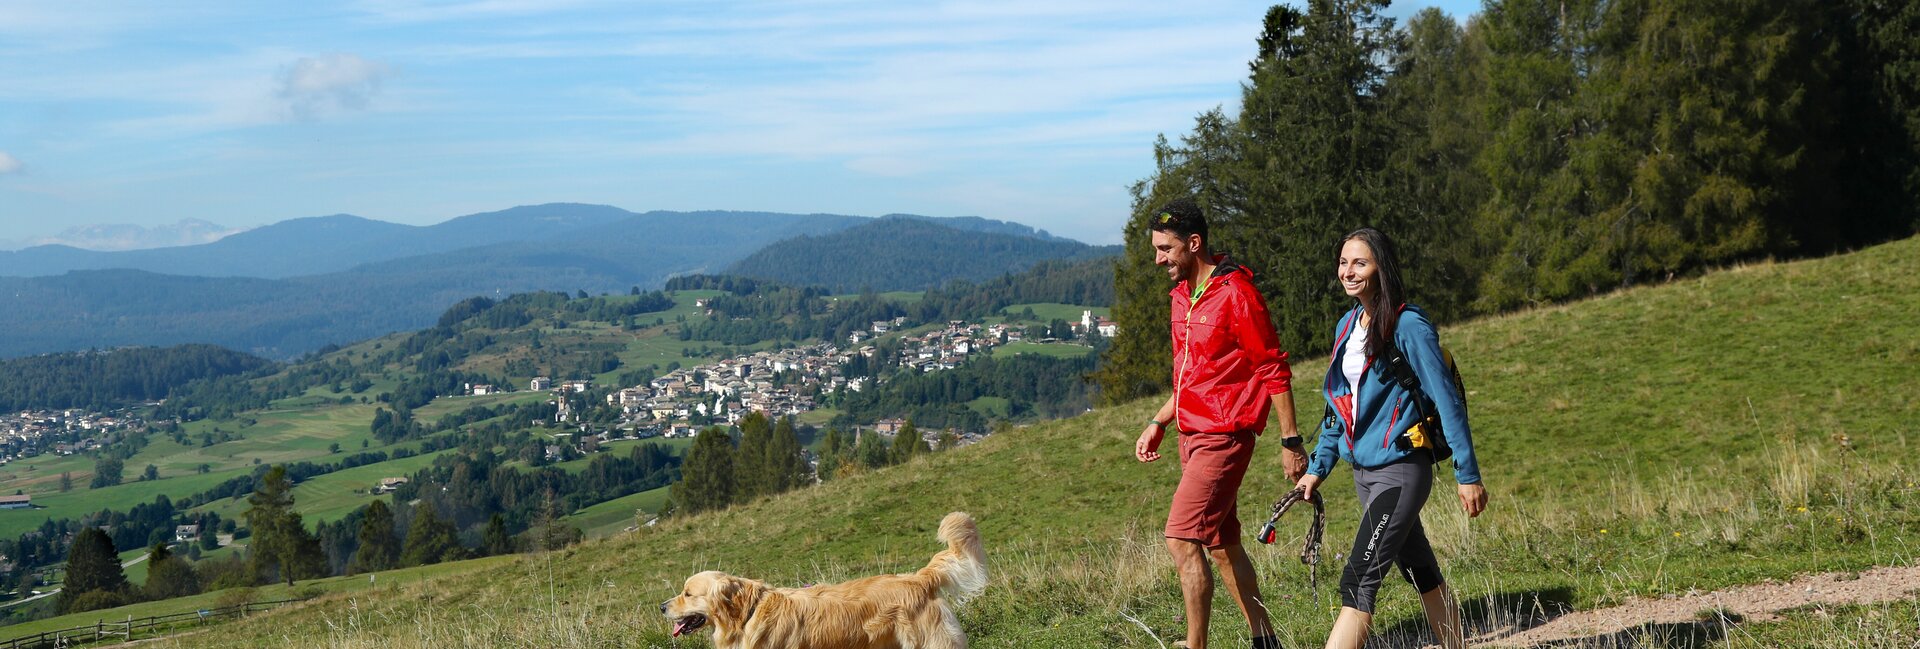 Val di Fiemme - Trekking, passeggiata con il cane
